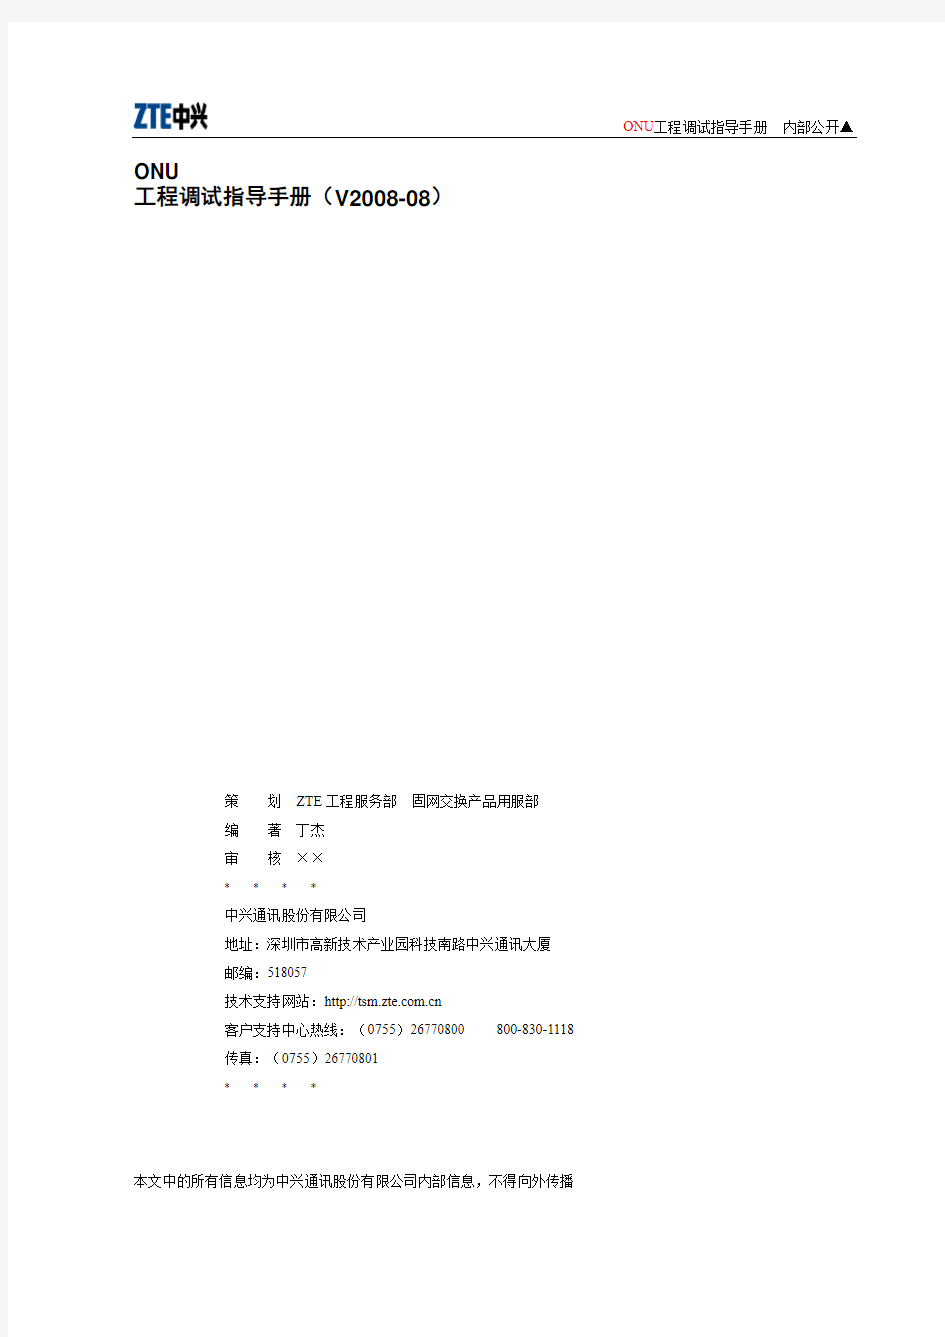 ZXA10 ONU调试指导手册